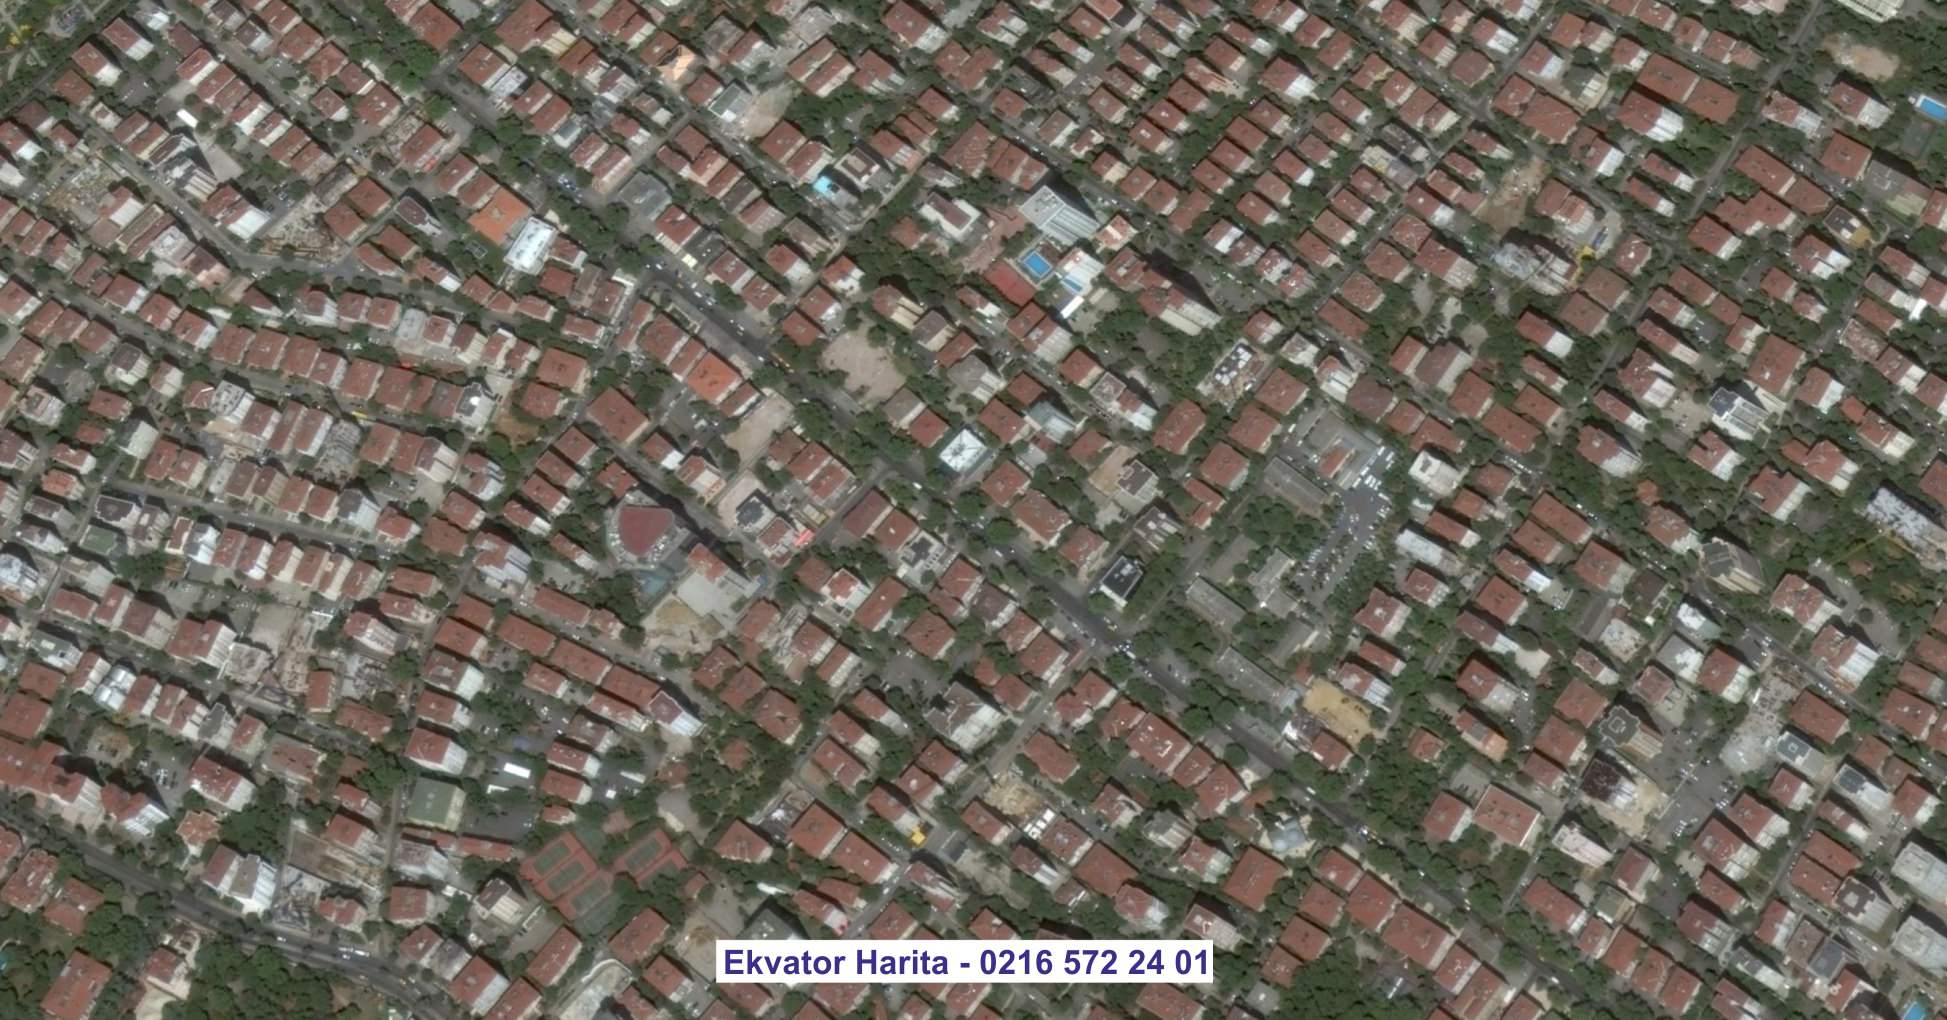 Hakkari Uydu Görüntüsü Örnek Fotoğrafı